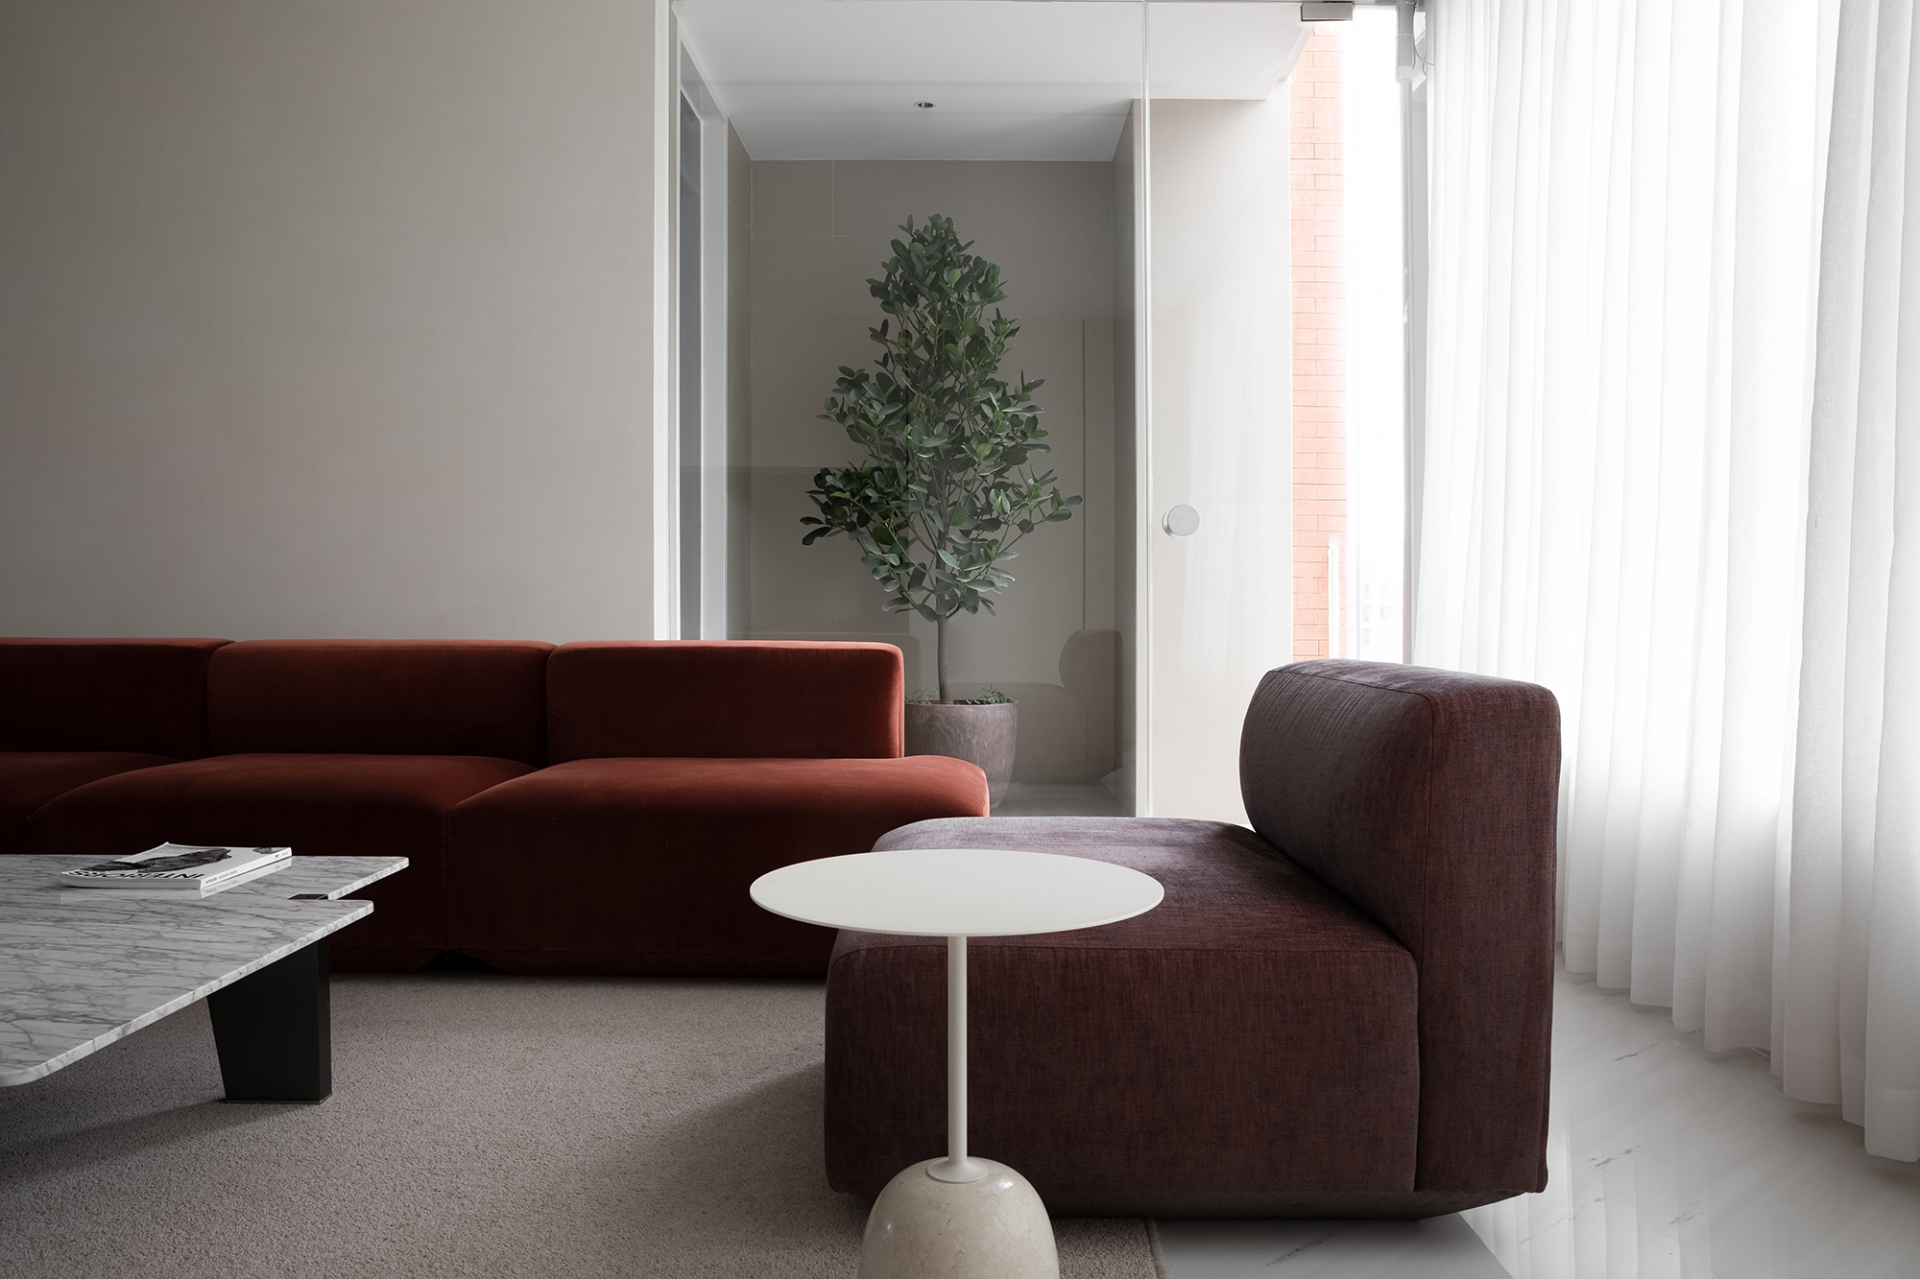 Phòng khách sử dụng ghế sofa màu đỏ không tay vịn cho cảm giác thanh thoát. Ghế bành sử dụng tone màu trầm ấm hơn, với chiếc bàn phụ màu trắng nhỏ xinh bên cạnh.